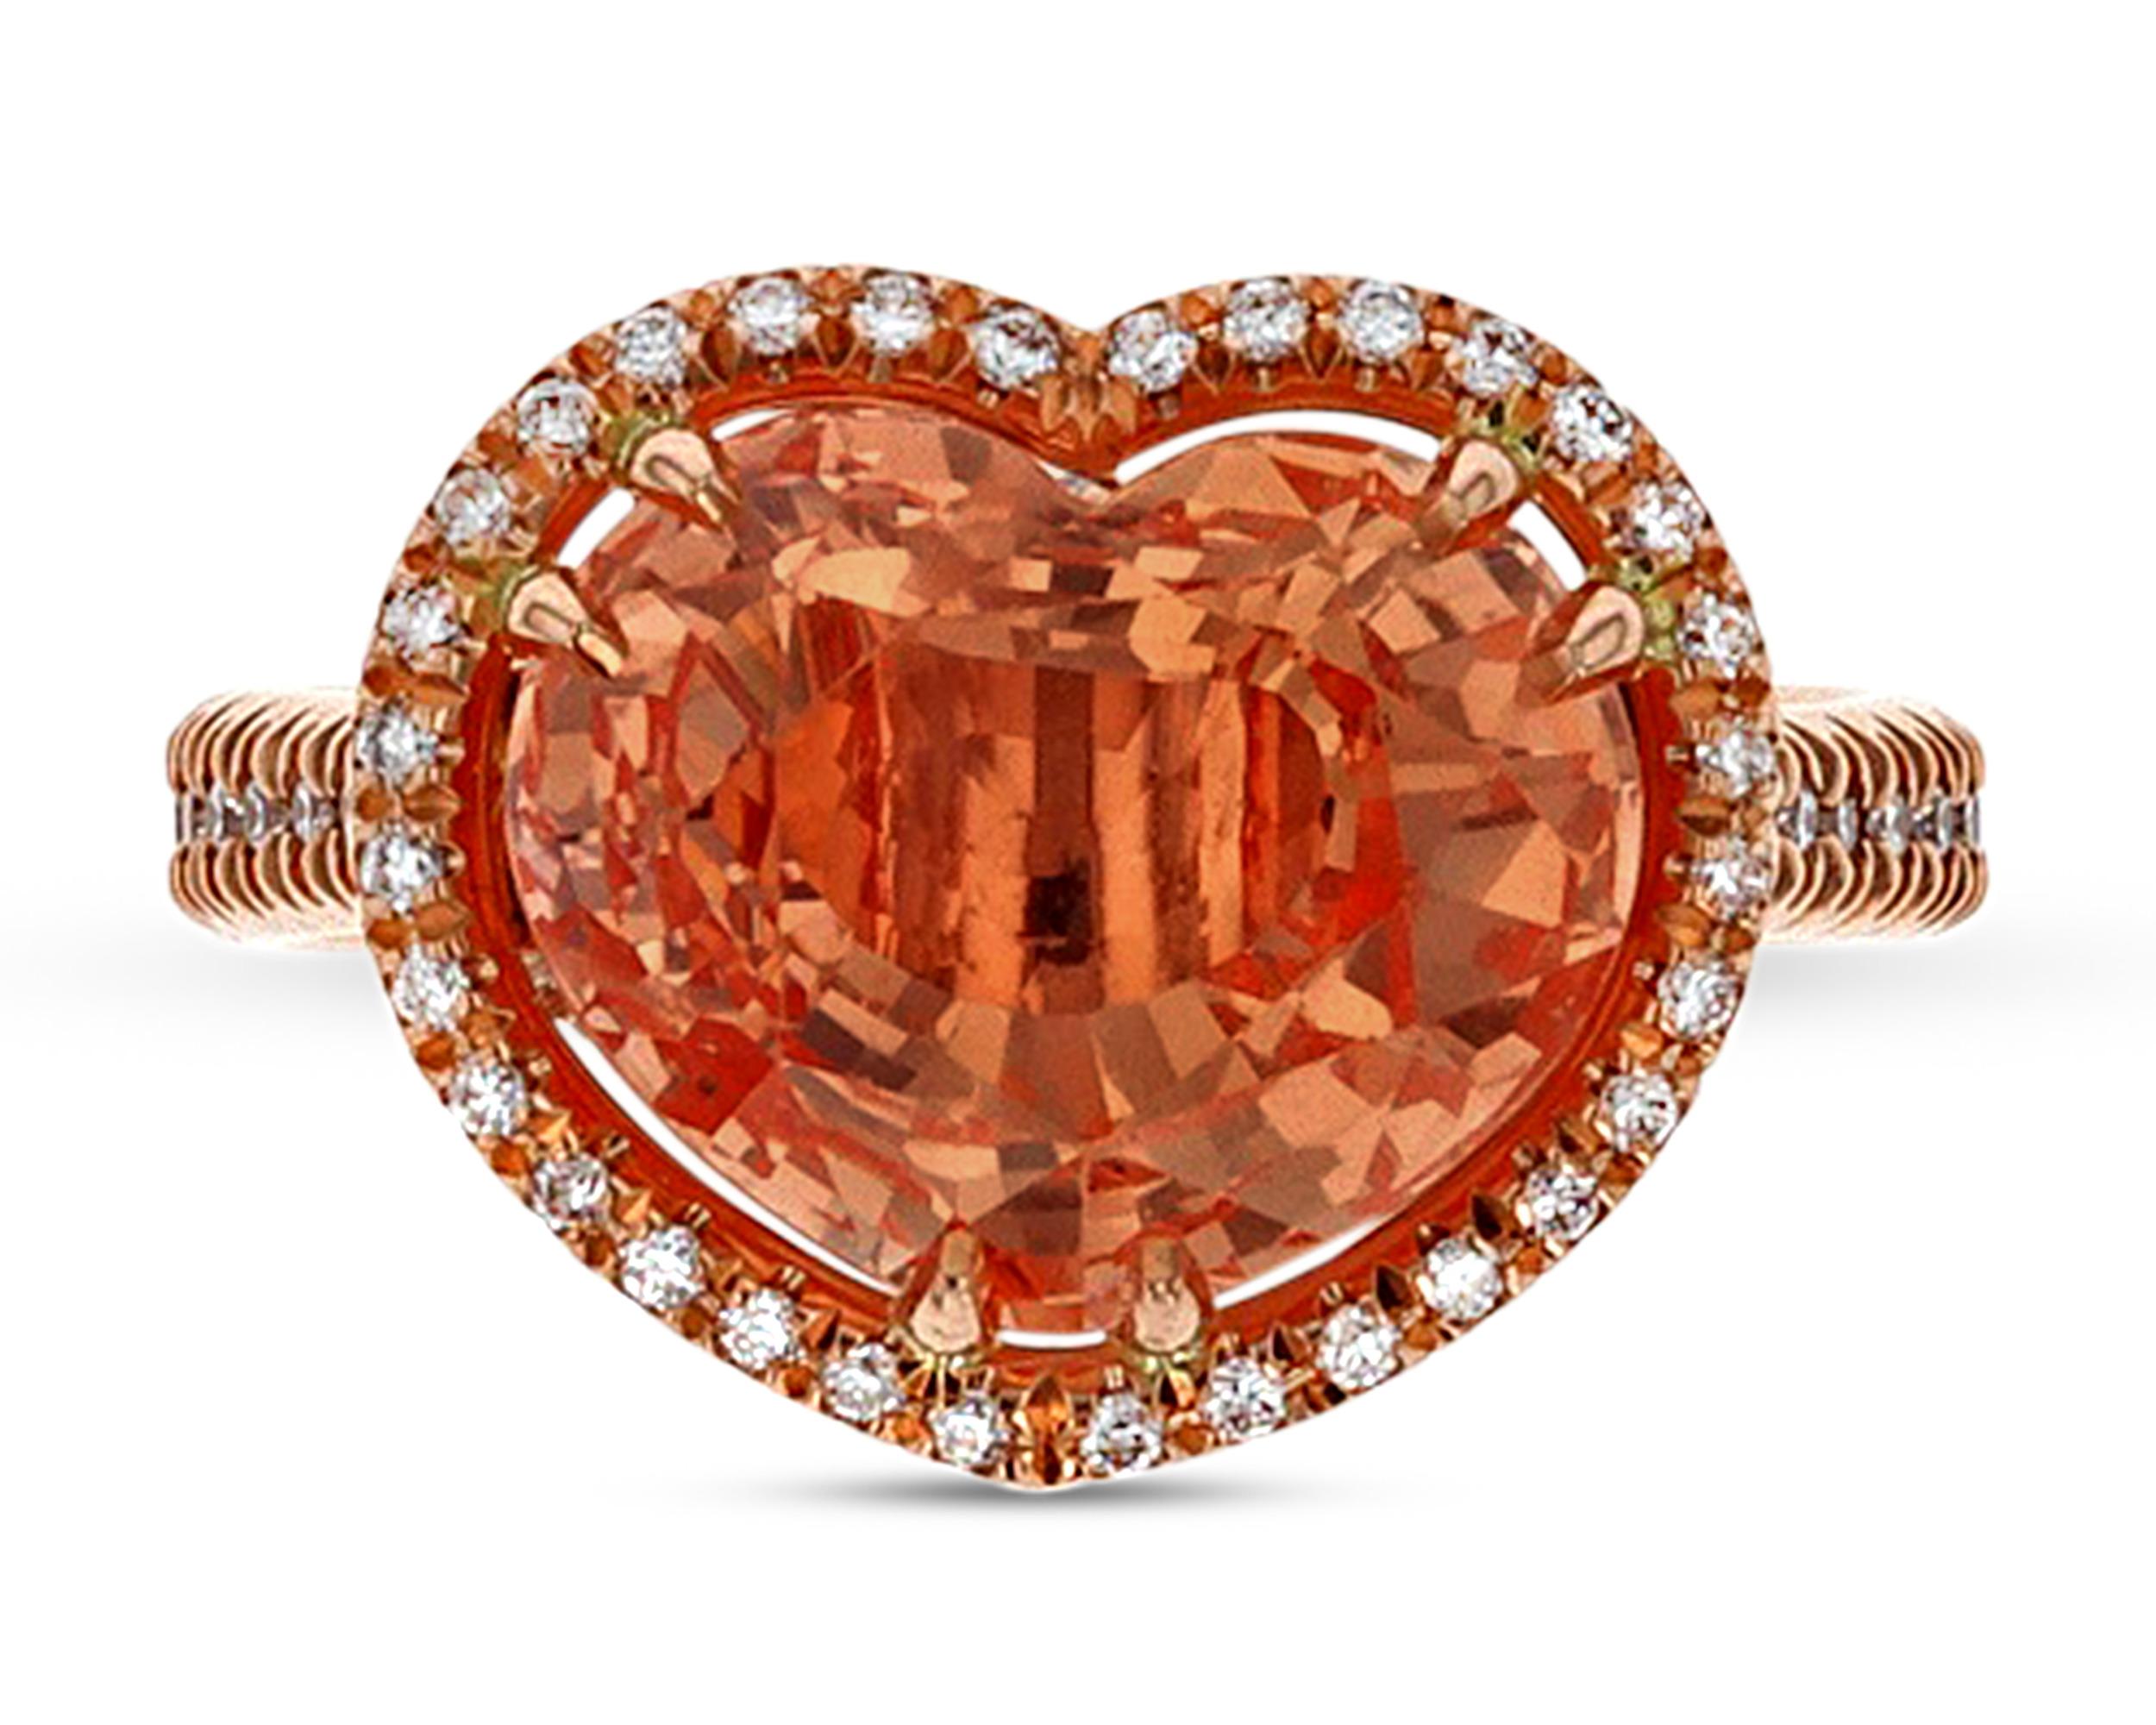 Dieser exquisite Ring enthält einen Padparadscha-Saphir, den seltensten aller Saphire. Mit einem Gewicht von 5,95 Karat zeigt dieser herzförmige Edelstein die rosa-orange Farbe, die diese Steine so begehrt macht. Der Saphir ist vom Gemresearch